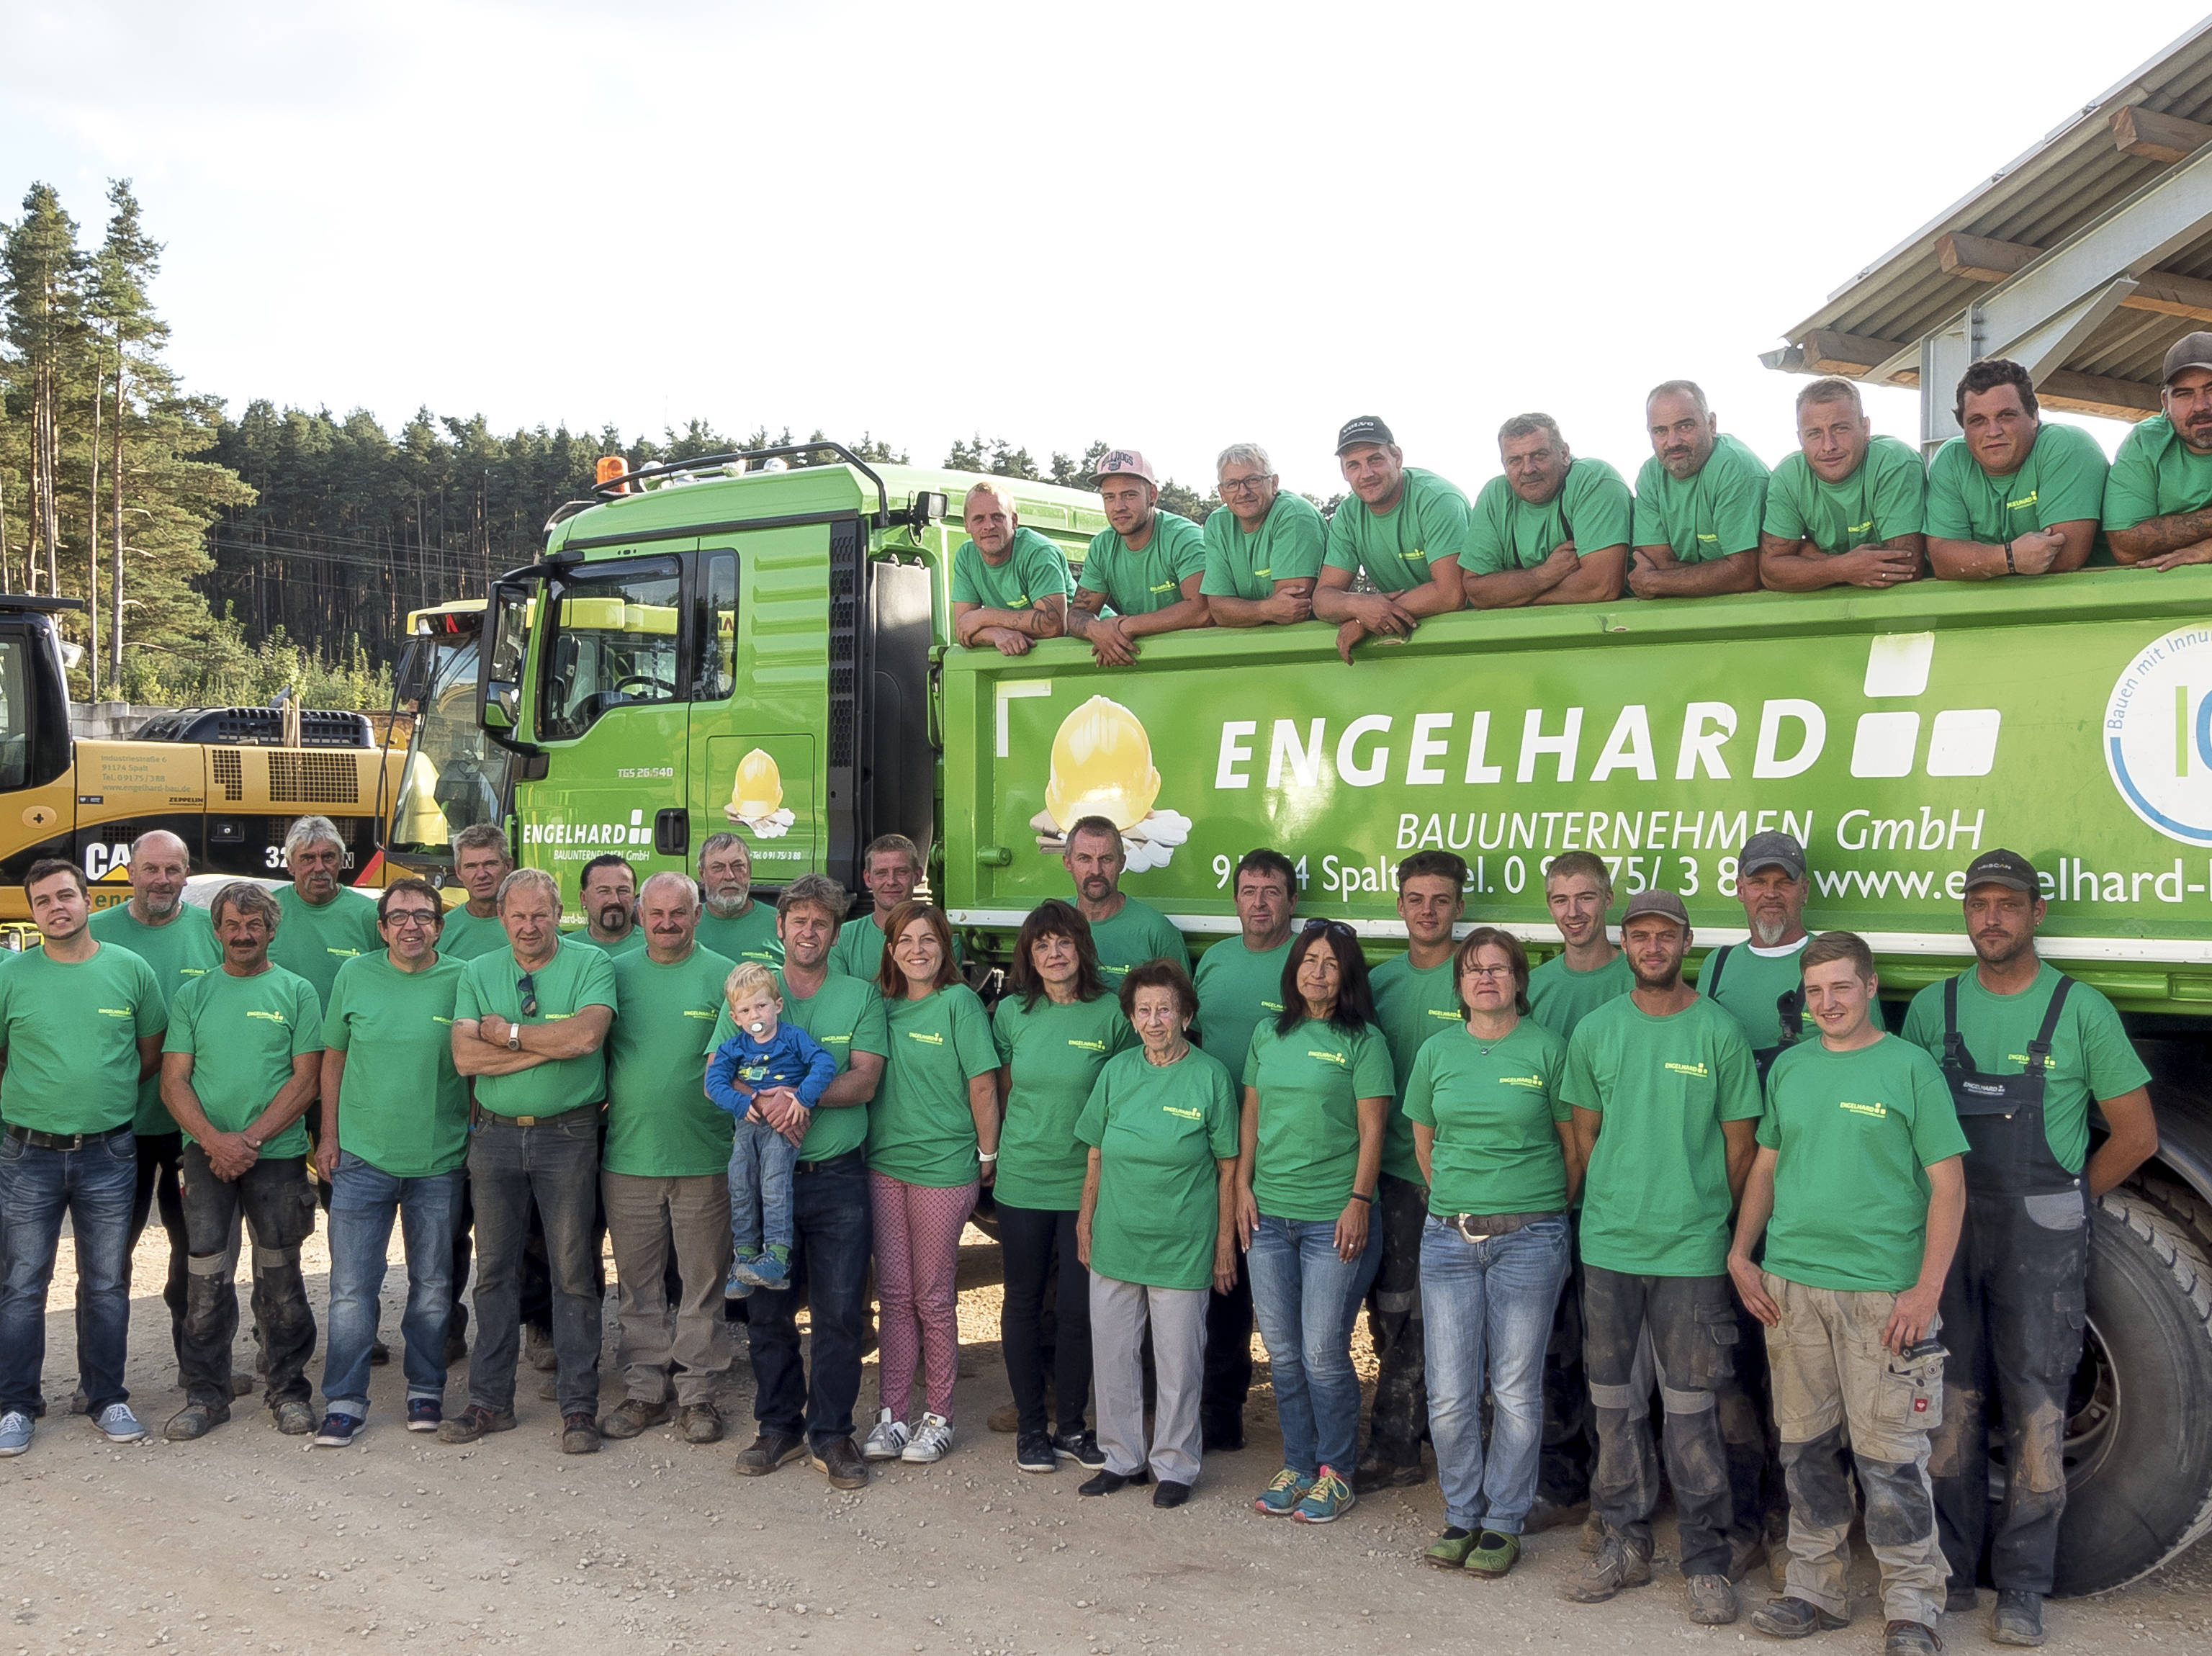 Team Engelhard Bauunternehmen